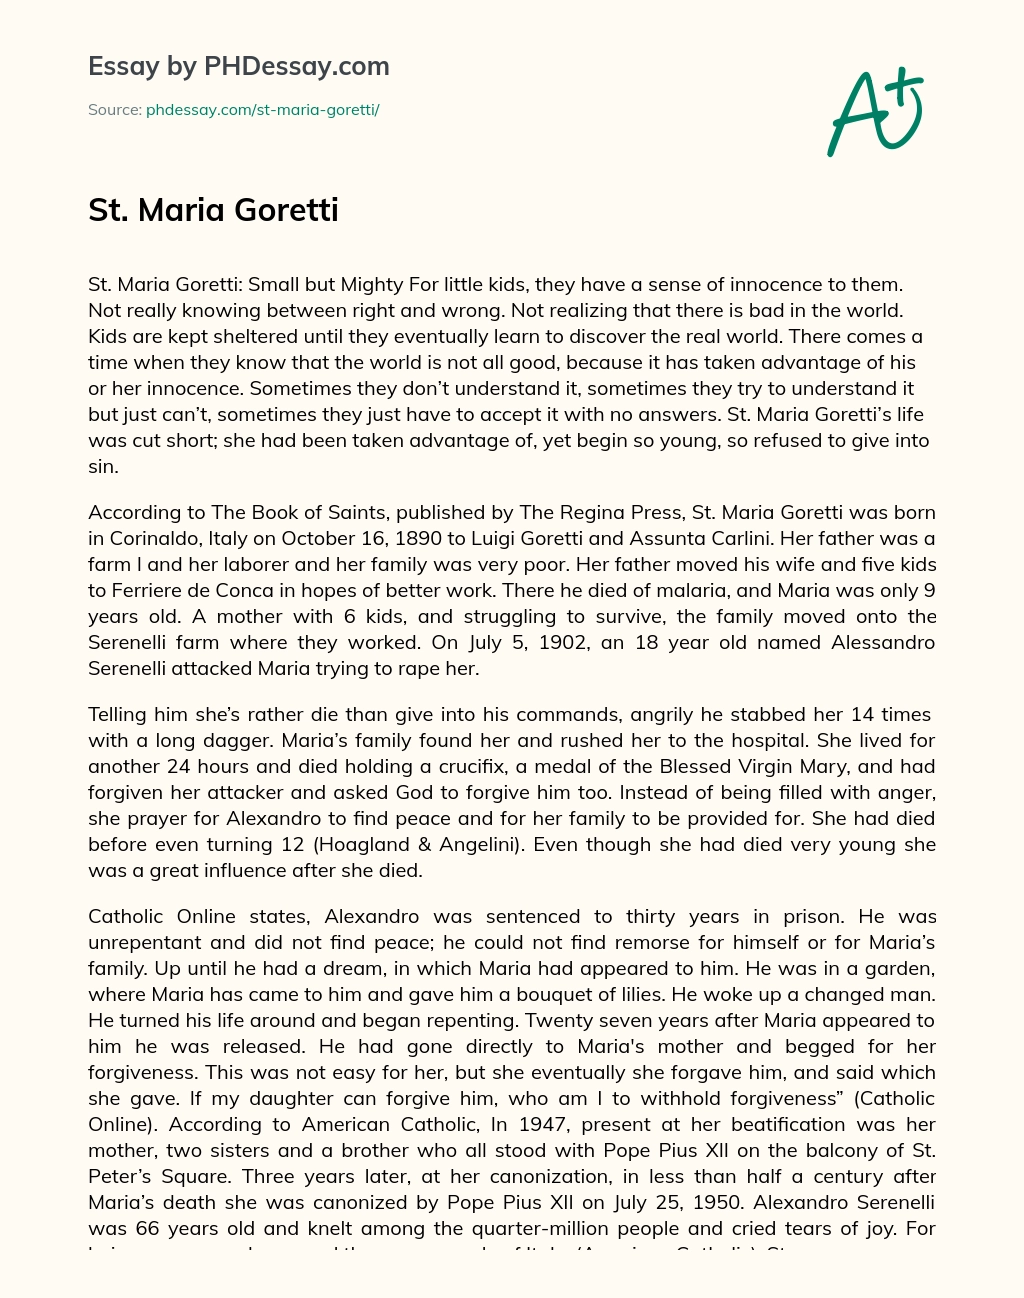 St. Maria Goretti essay